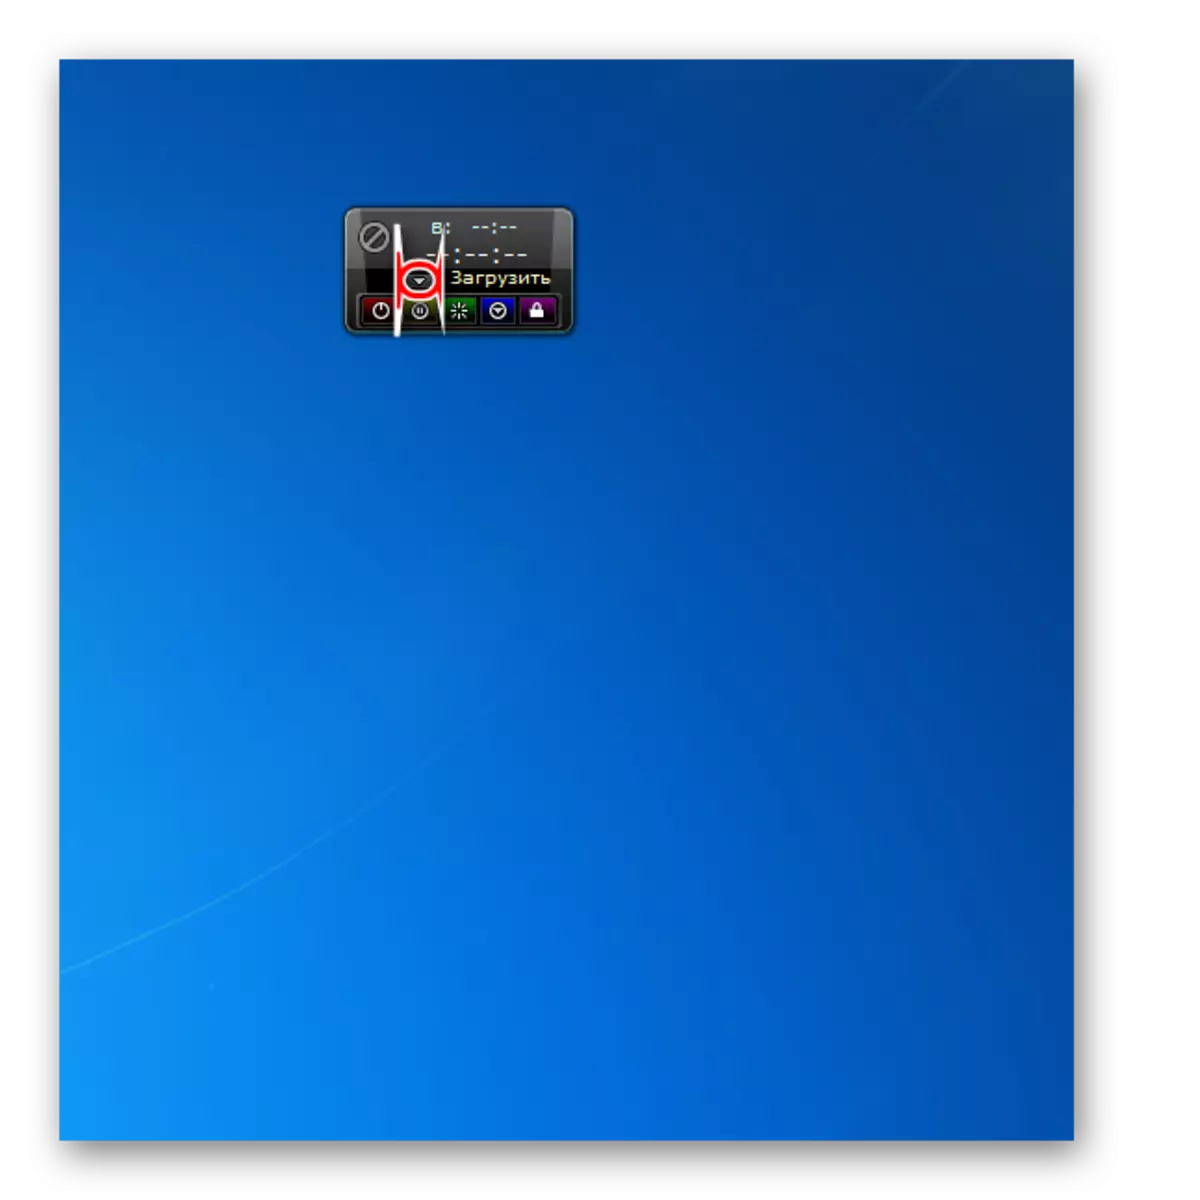 Kubisala mabatani kuchokera kwadzidzidzi ku AutoShutdown Gadget mu Windows 7